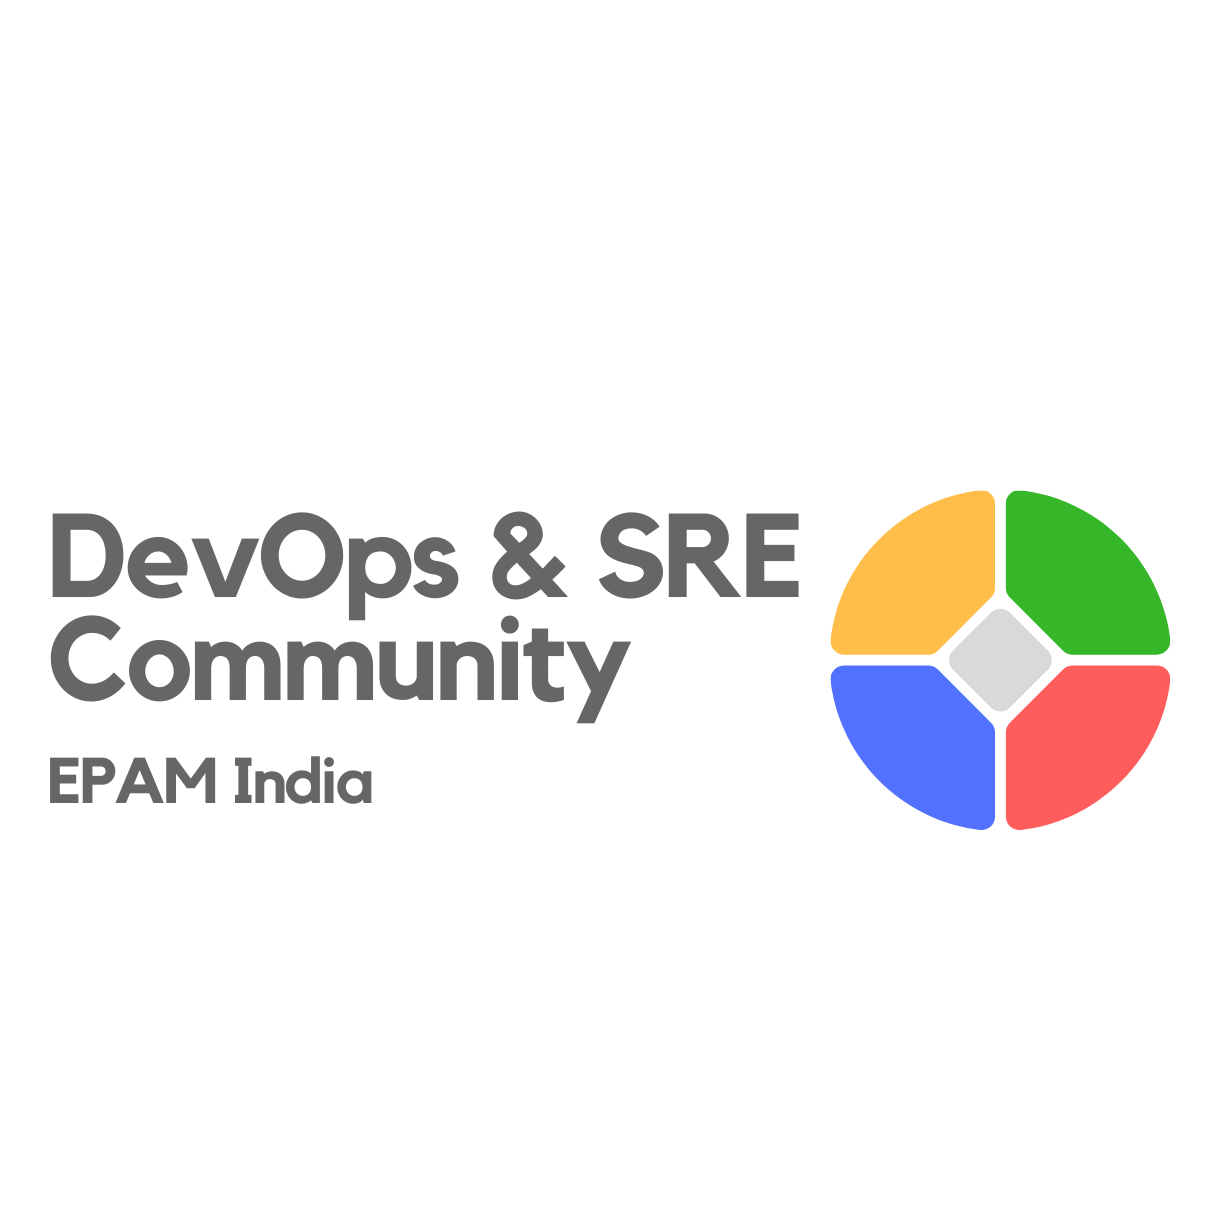 DevOps & SRE Community - EPAM India